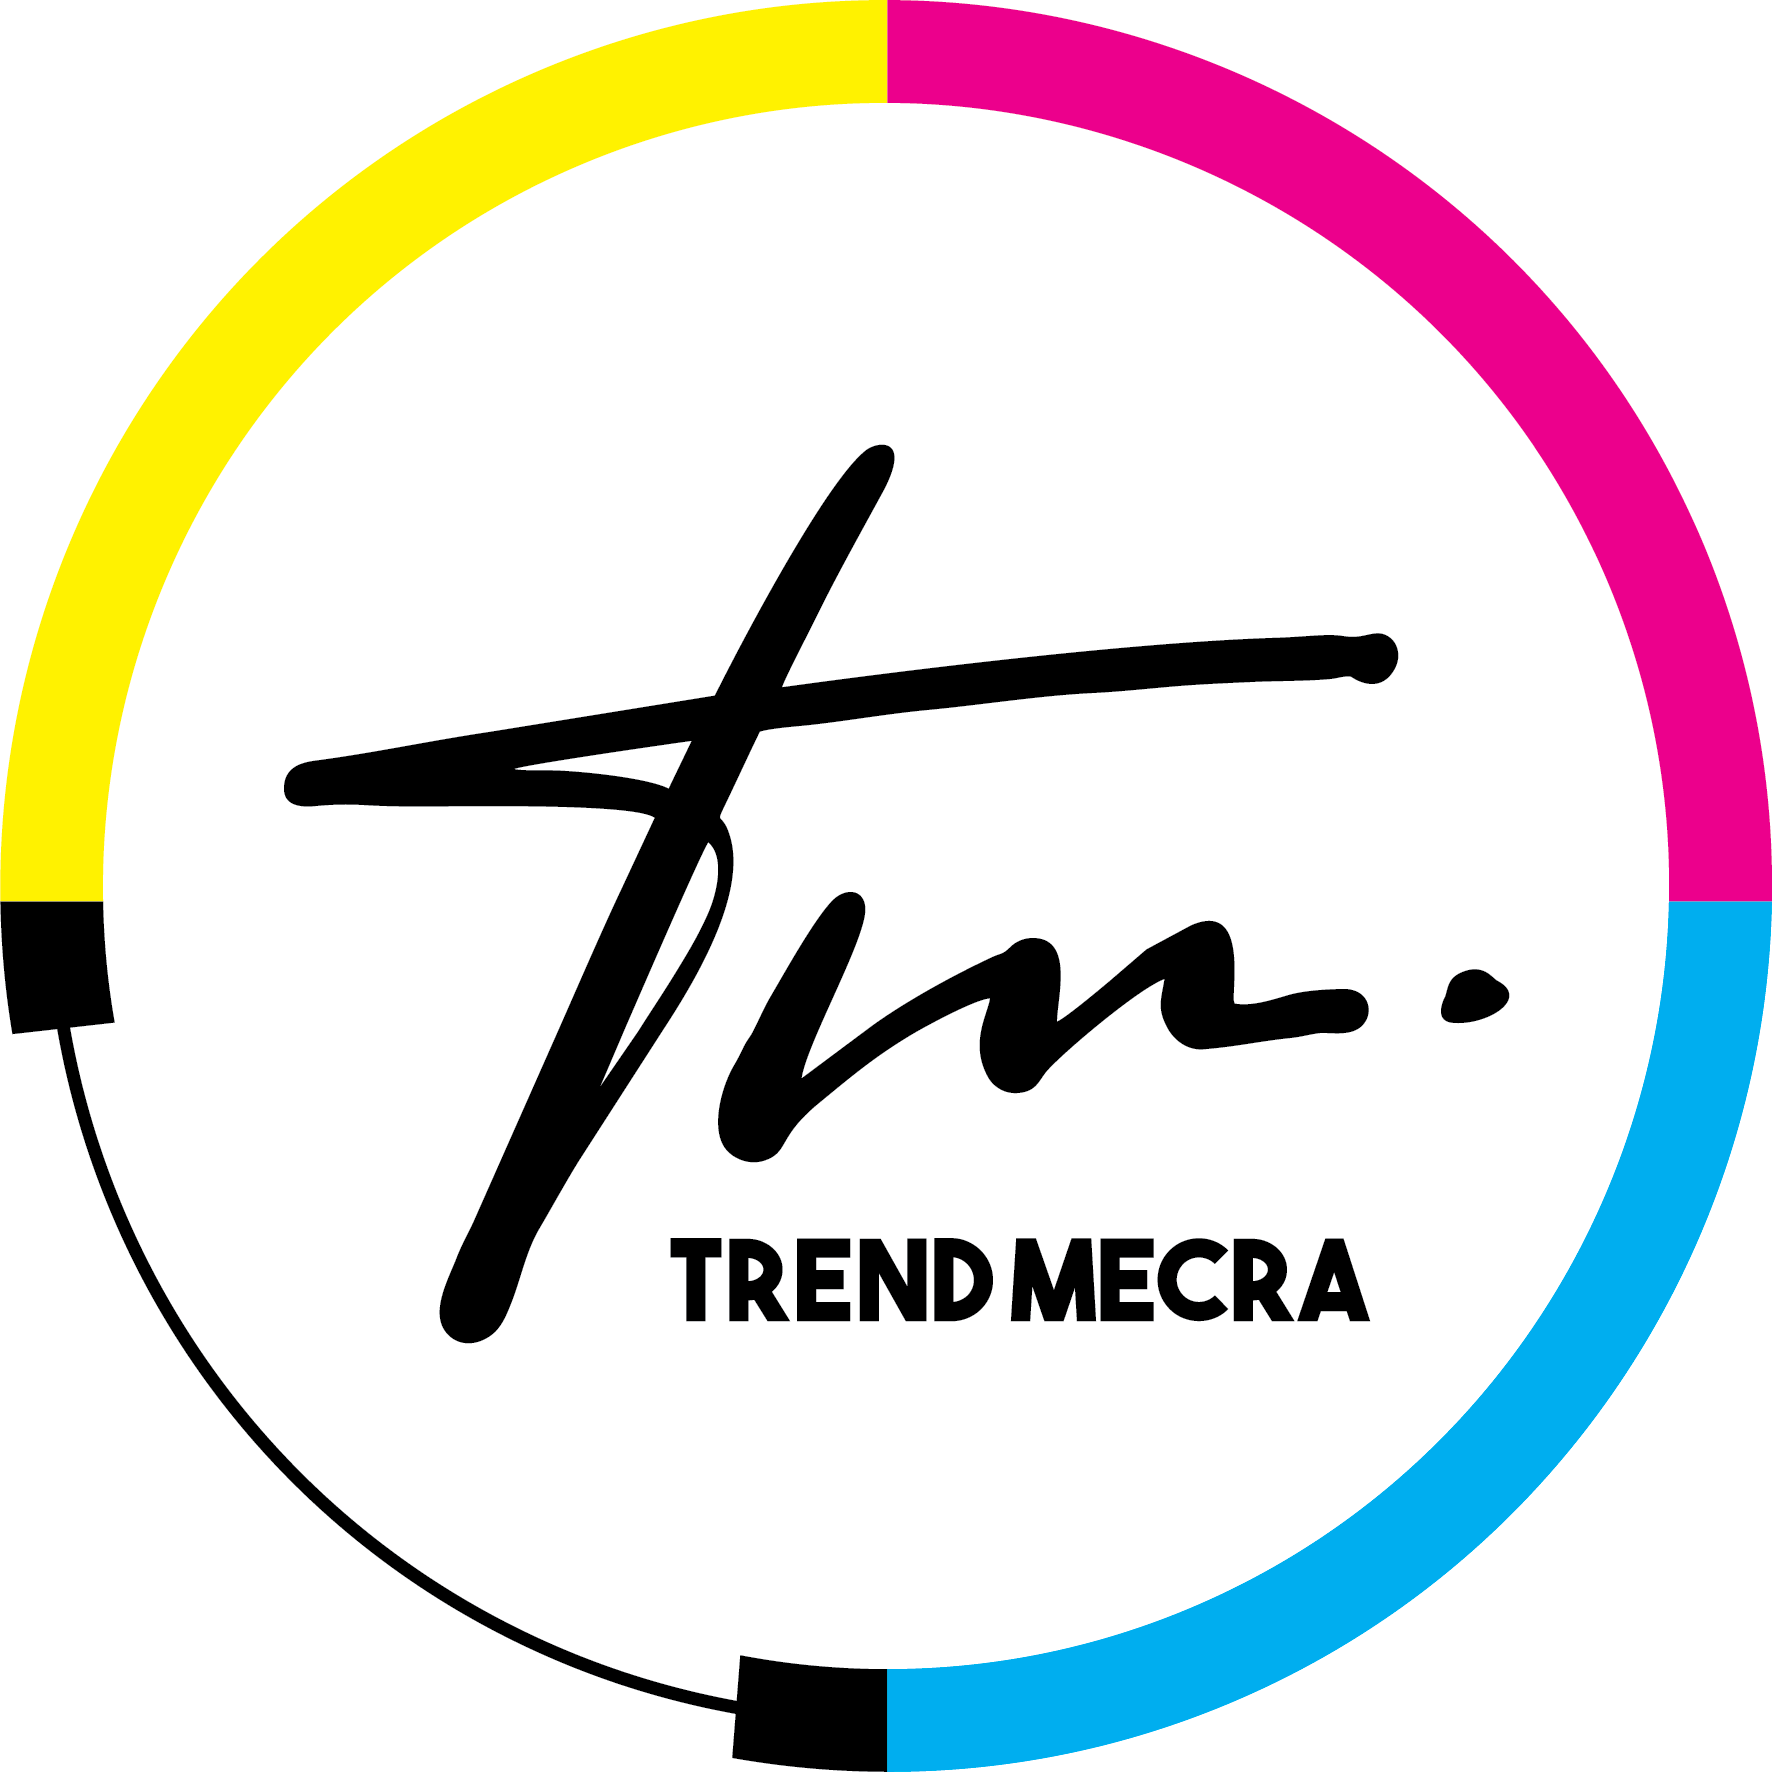 Trend Mecra Reklamcılık Hizmetleri San. ve Tic. A.Ş.